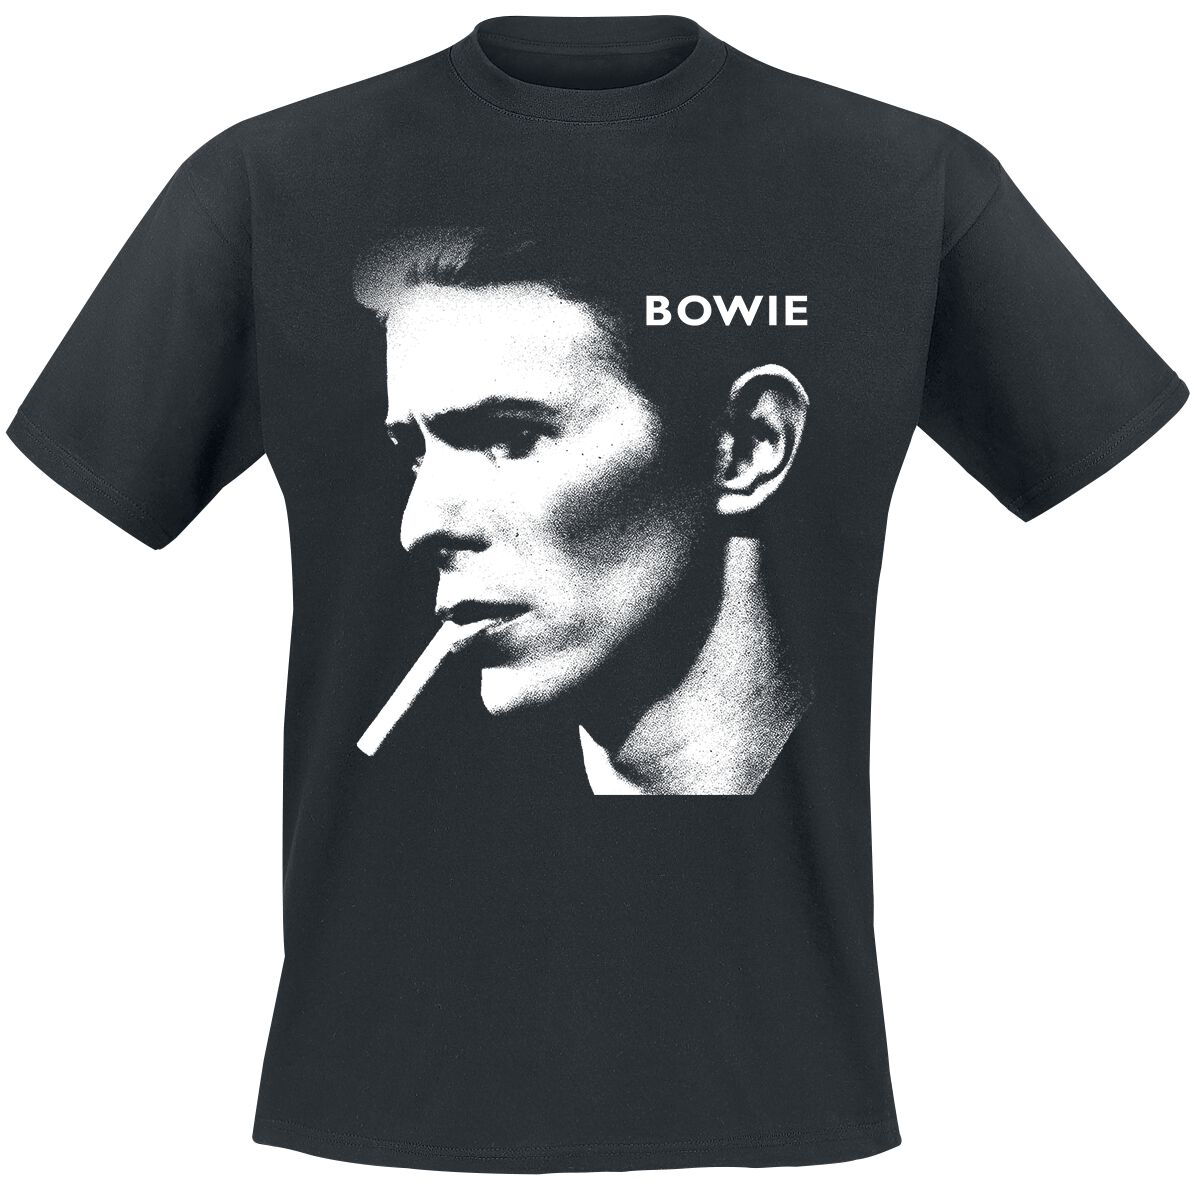 David Bowie T-Shirt - Grainy Smoke - S bis XXL - für Männer - Größe S - schwarz  - Lizenziertes Merchandise!